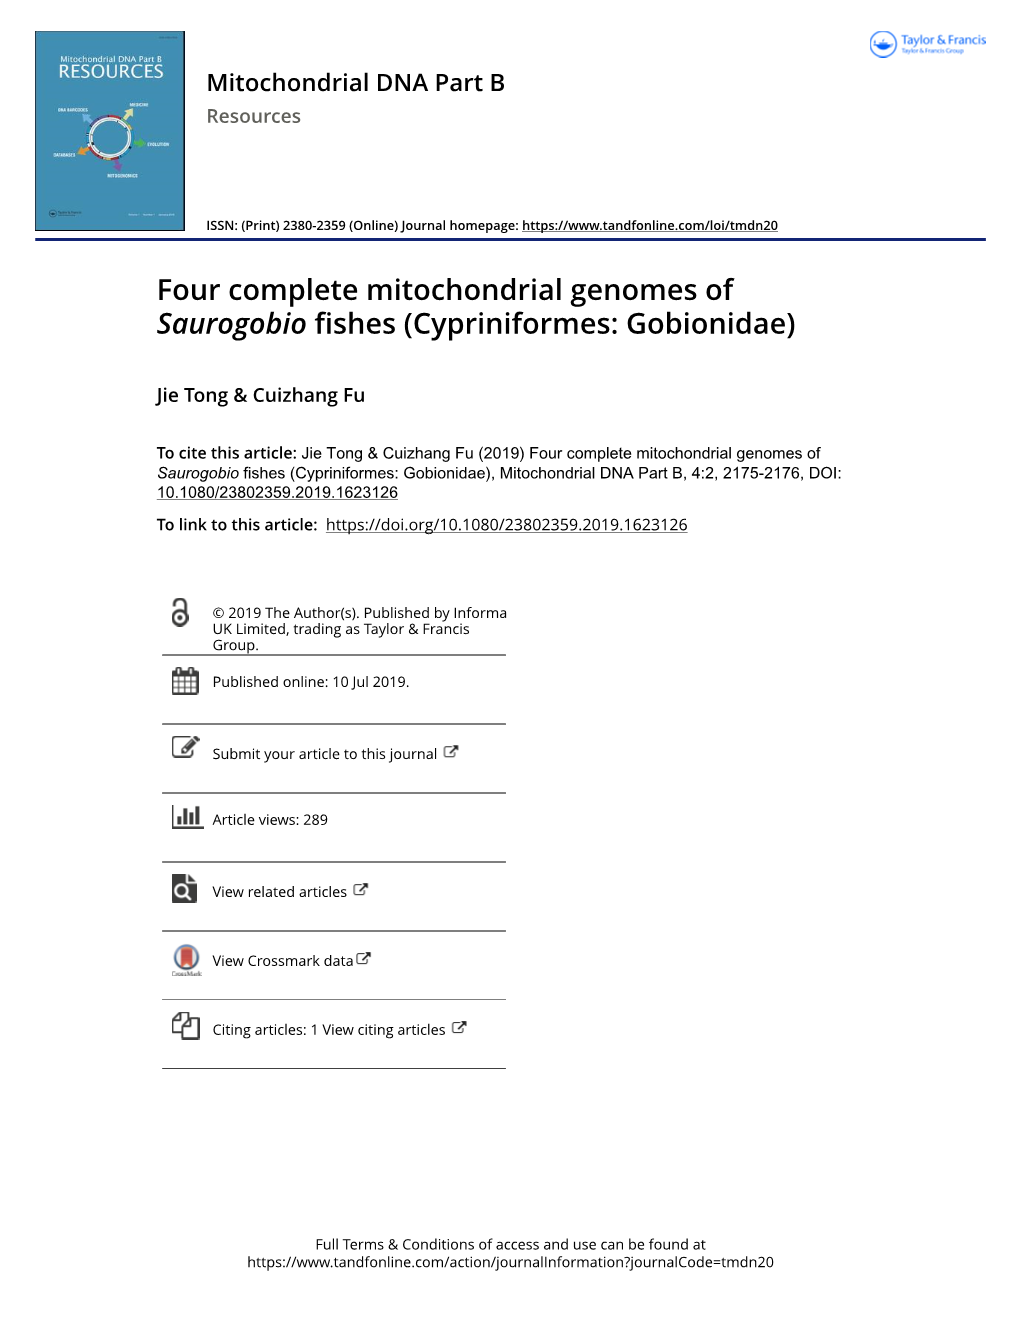 Four Complete Mitochondrial Genomes of Saurogobio Fishes (Cypriniformes: Gobionidae)